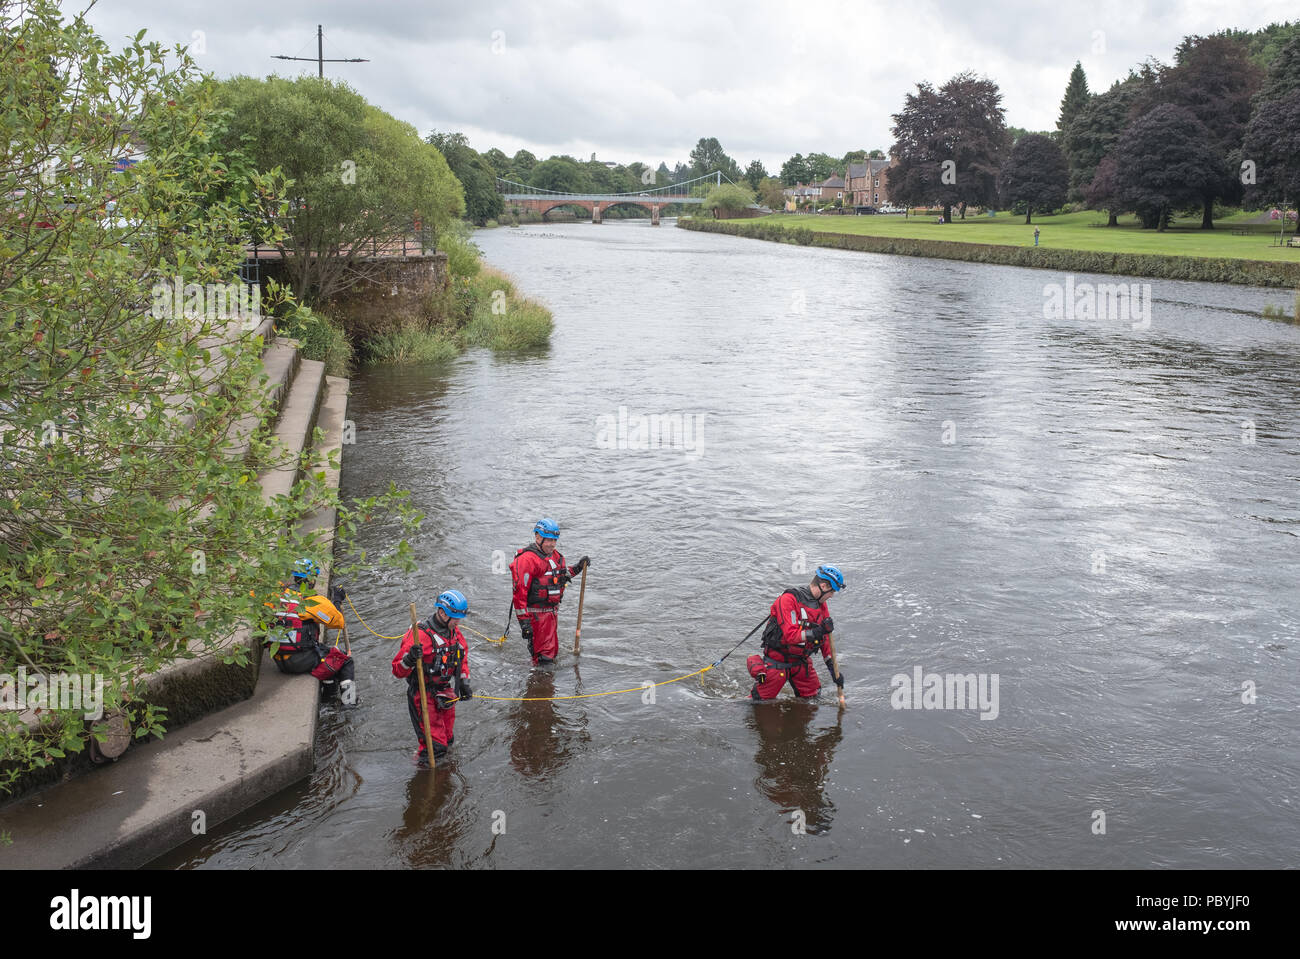 Des bénévoles de recherche et sauvetage H M commencer une recherche de personne disparue de la rivière Nith à Dumfries, en Écosse. Banque D'Images